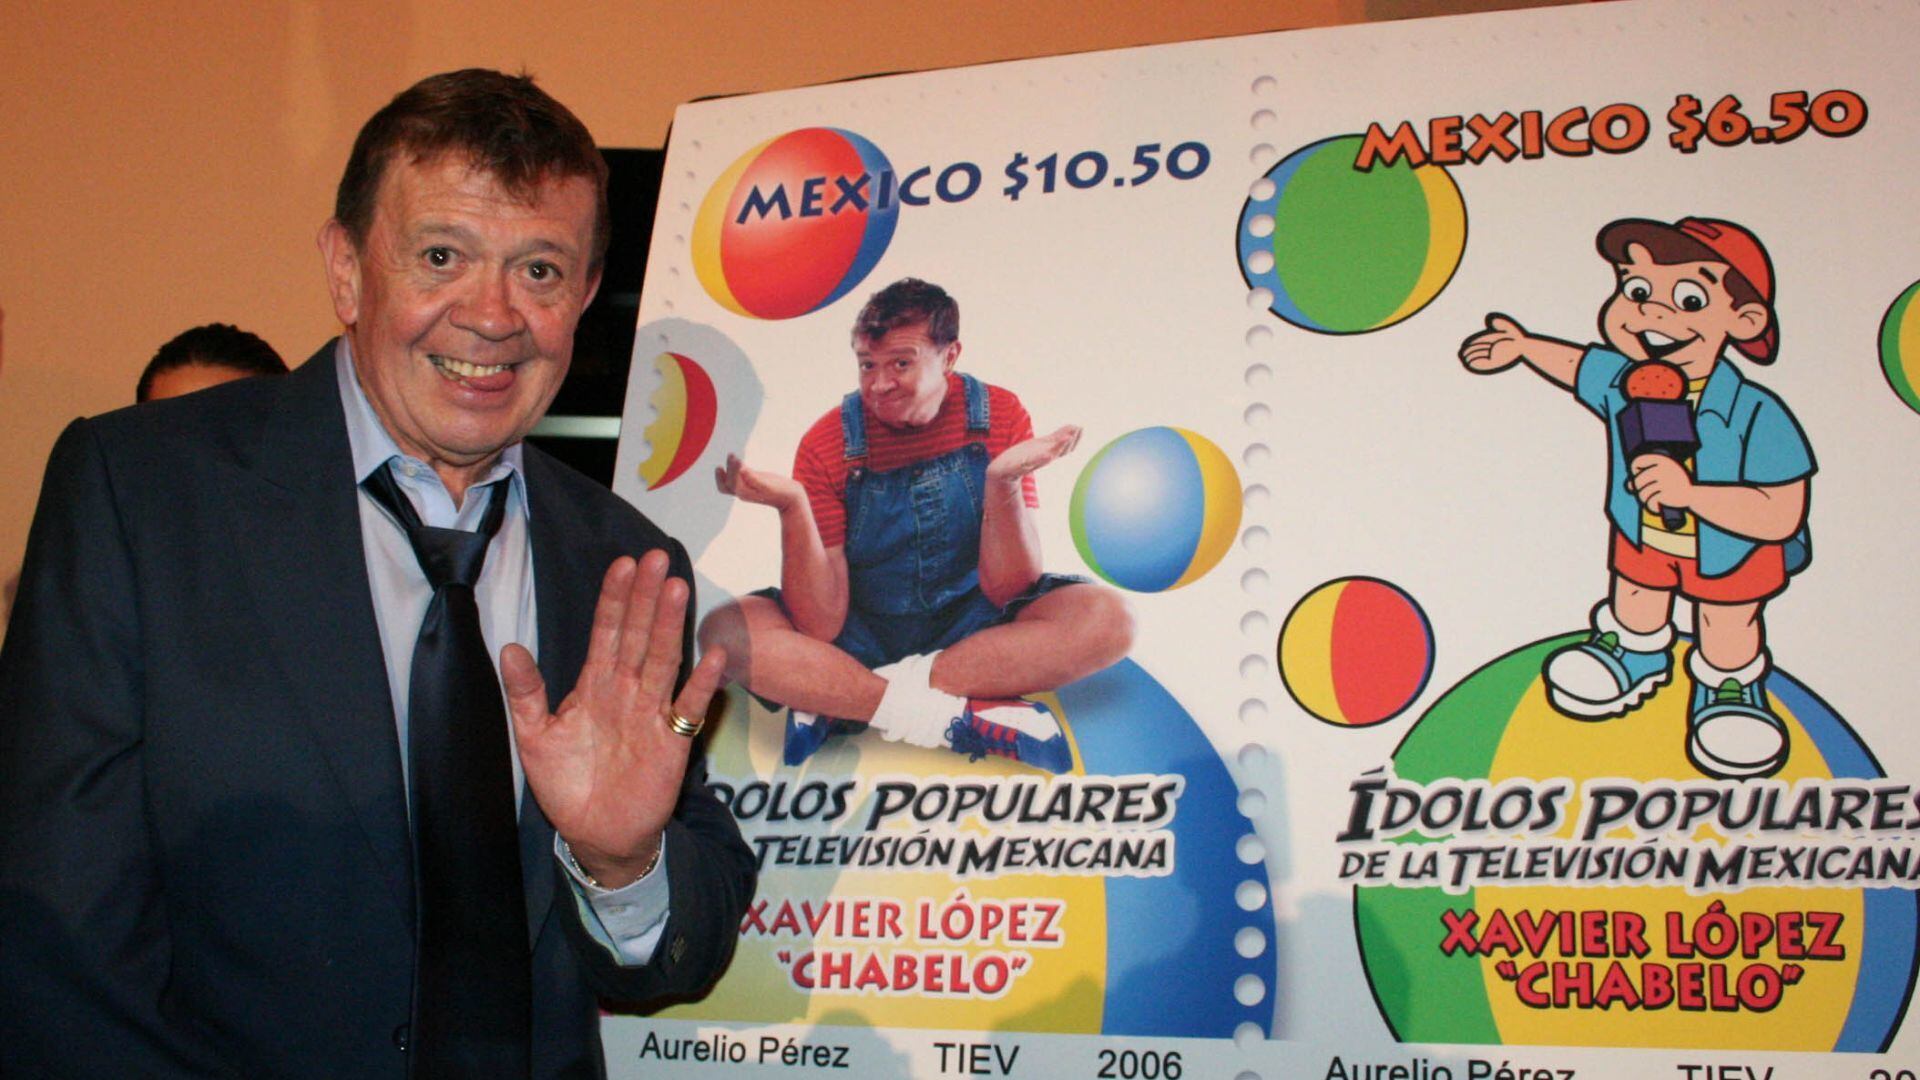 Chebelo Televisa rinde homenaje con retransmisión de En Familia